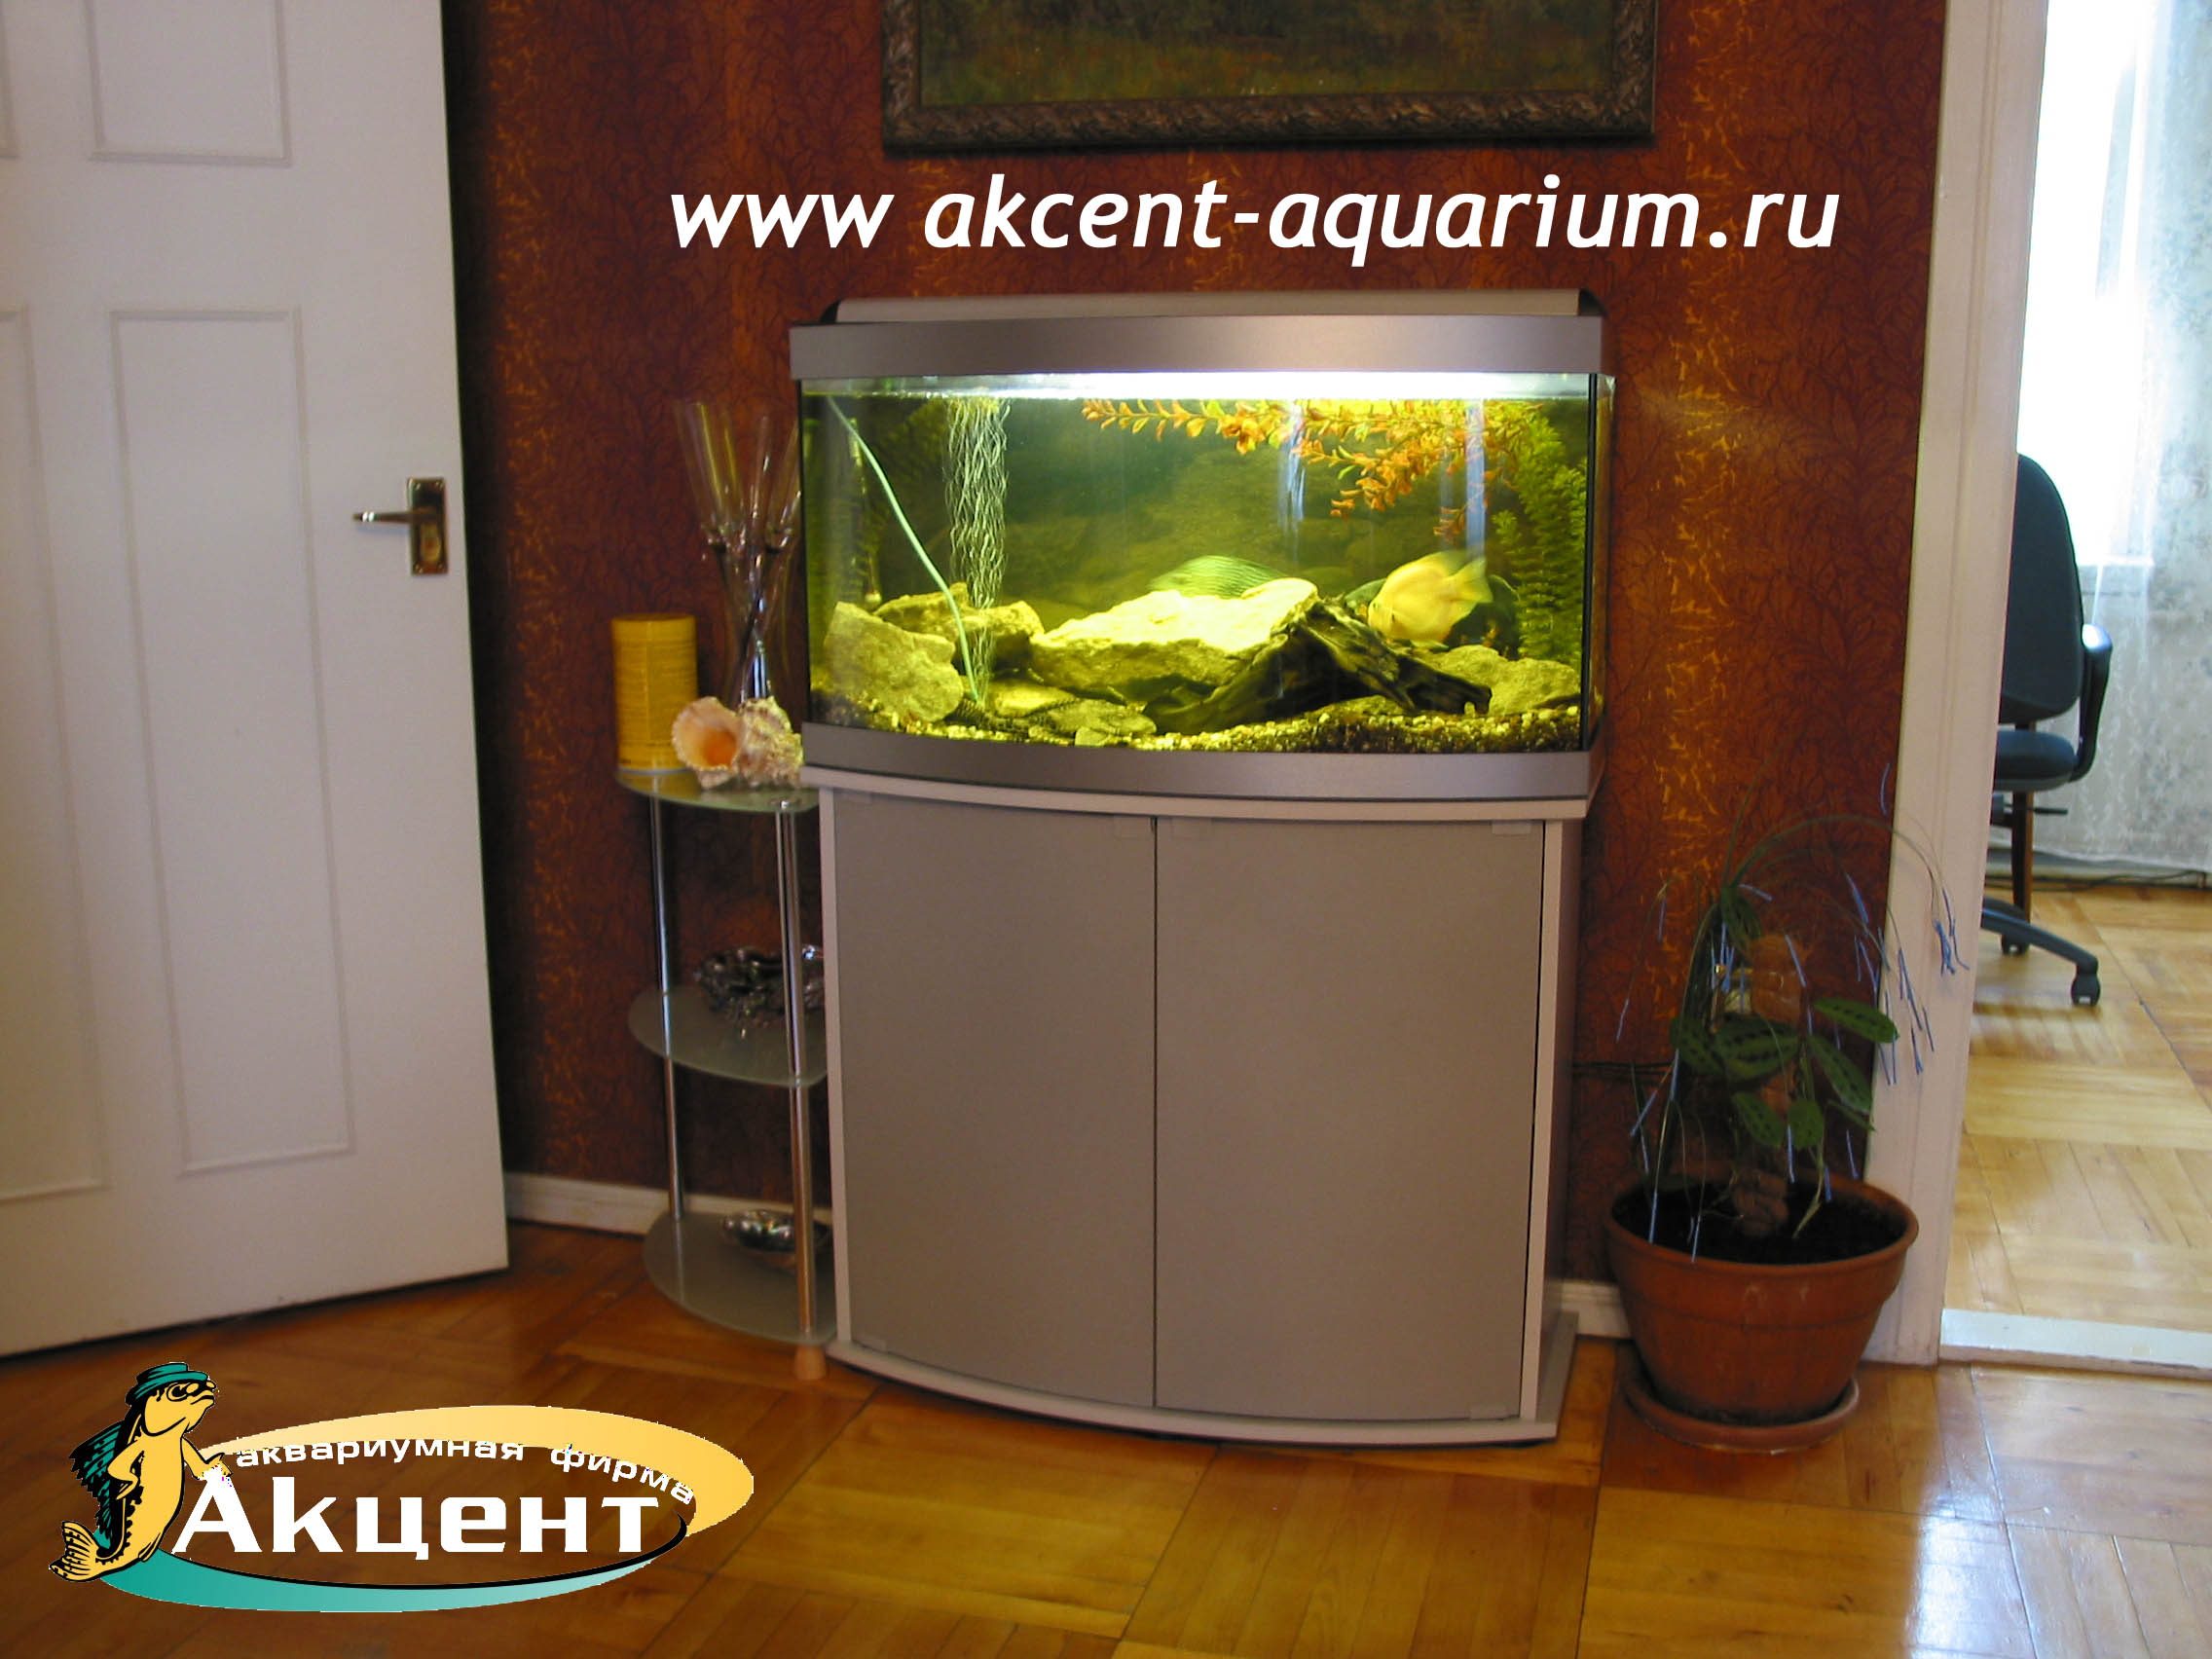 Акцент-аквариум, аквариум 160 литров с гнутым передним стеклом